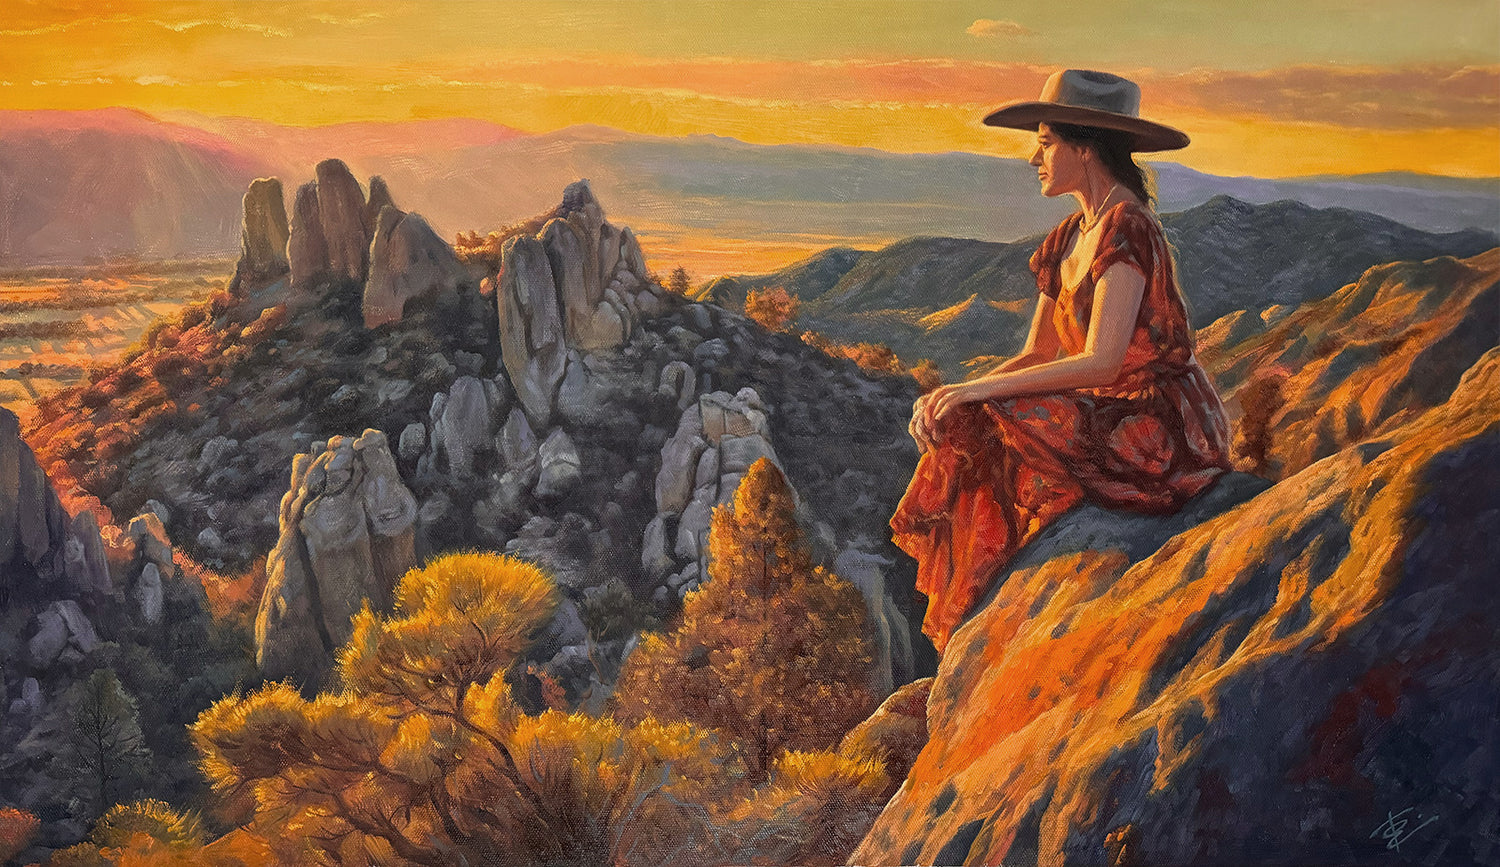 Desert Rock Woman